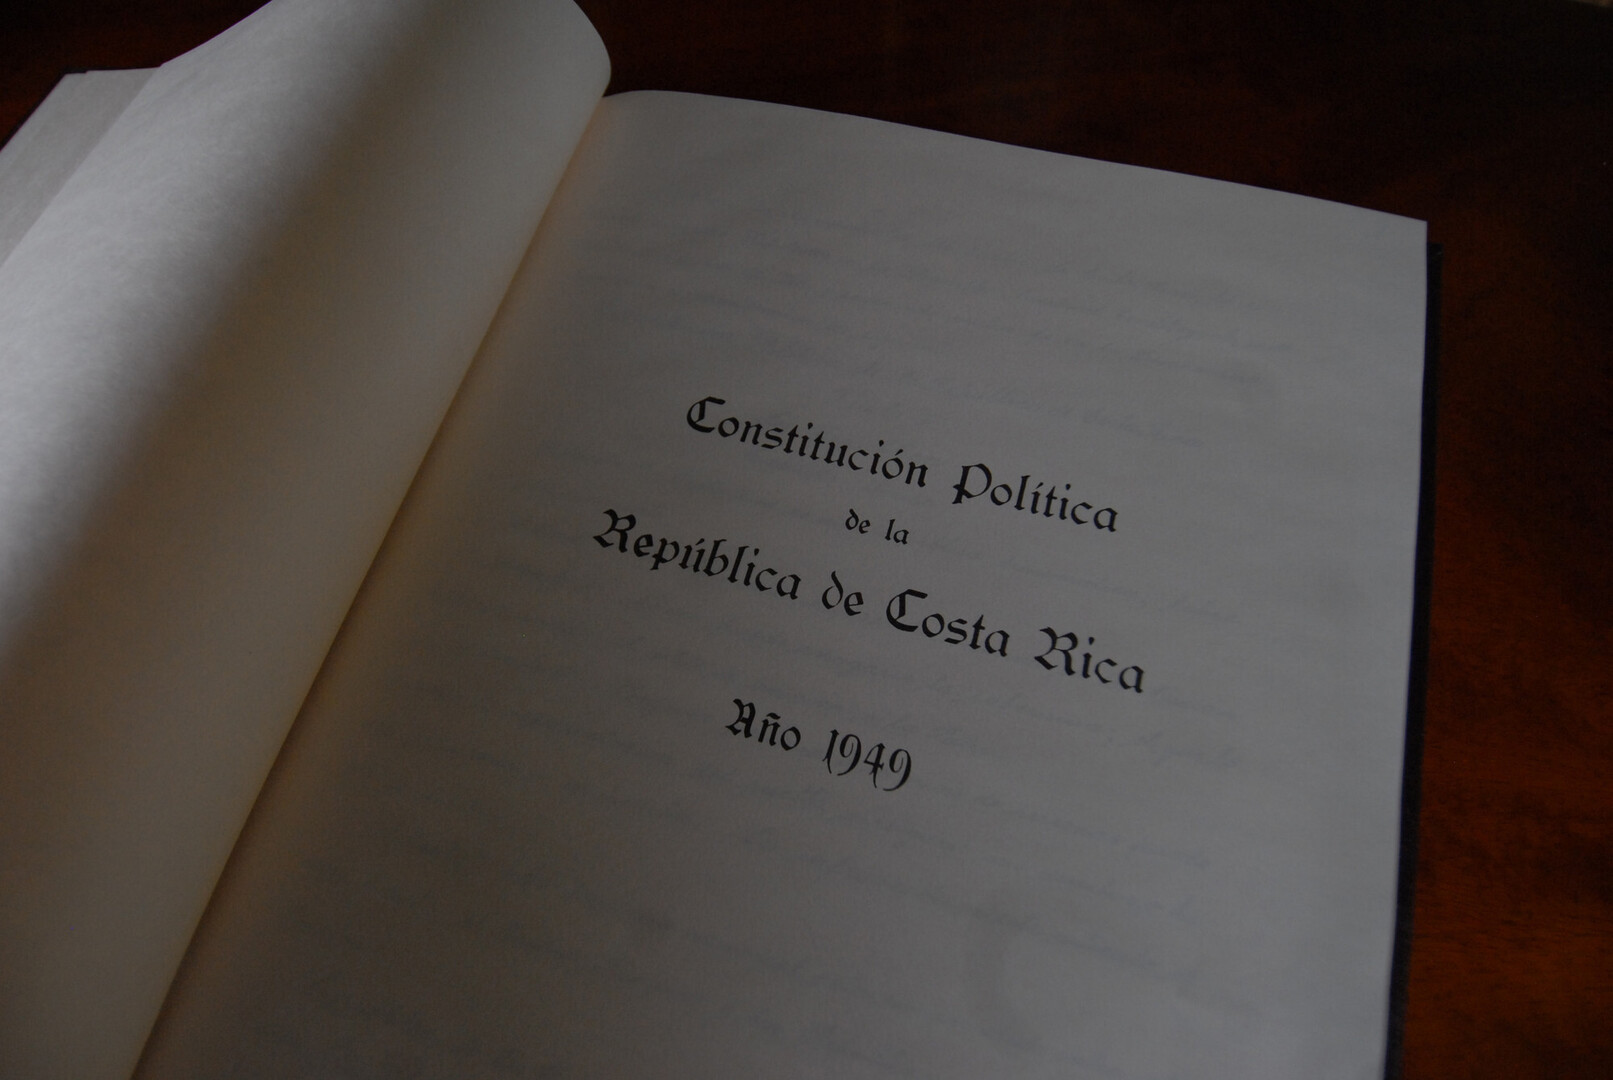 Constitución Política de Costa Rica de 1949